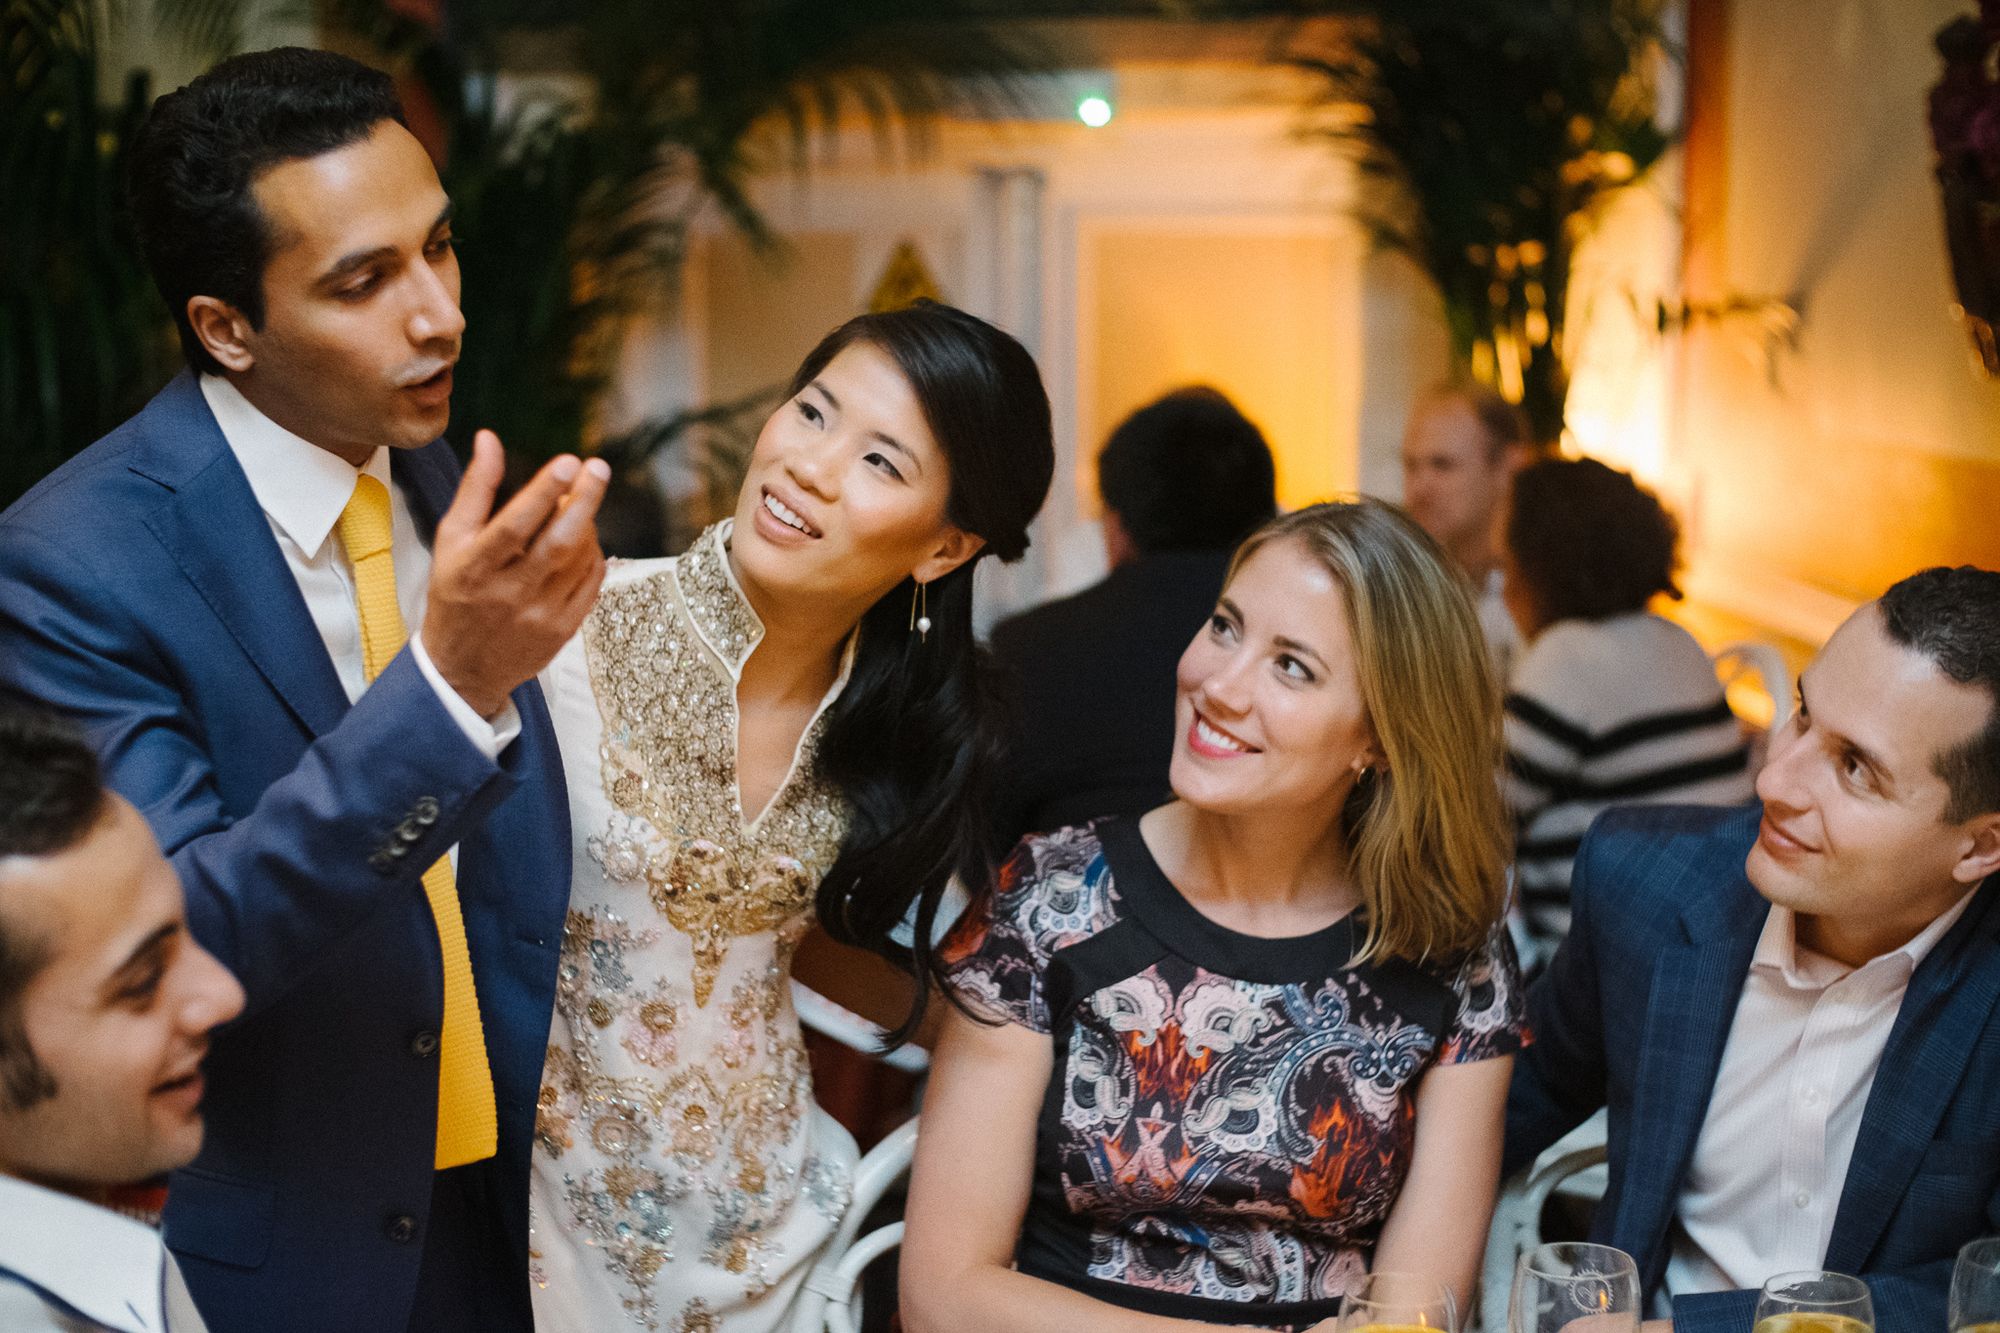 Informal wedding dinner party at La Porte des Indes restaurant London